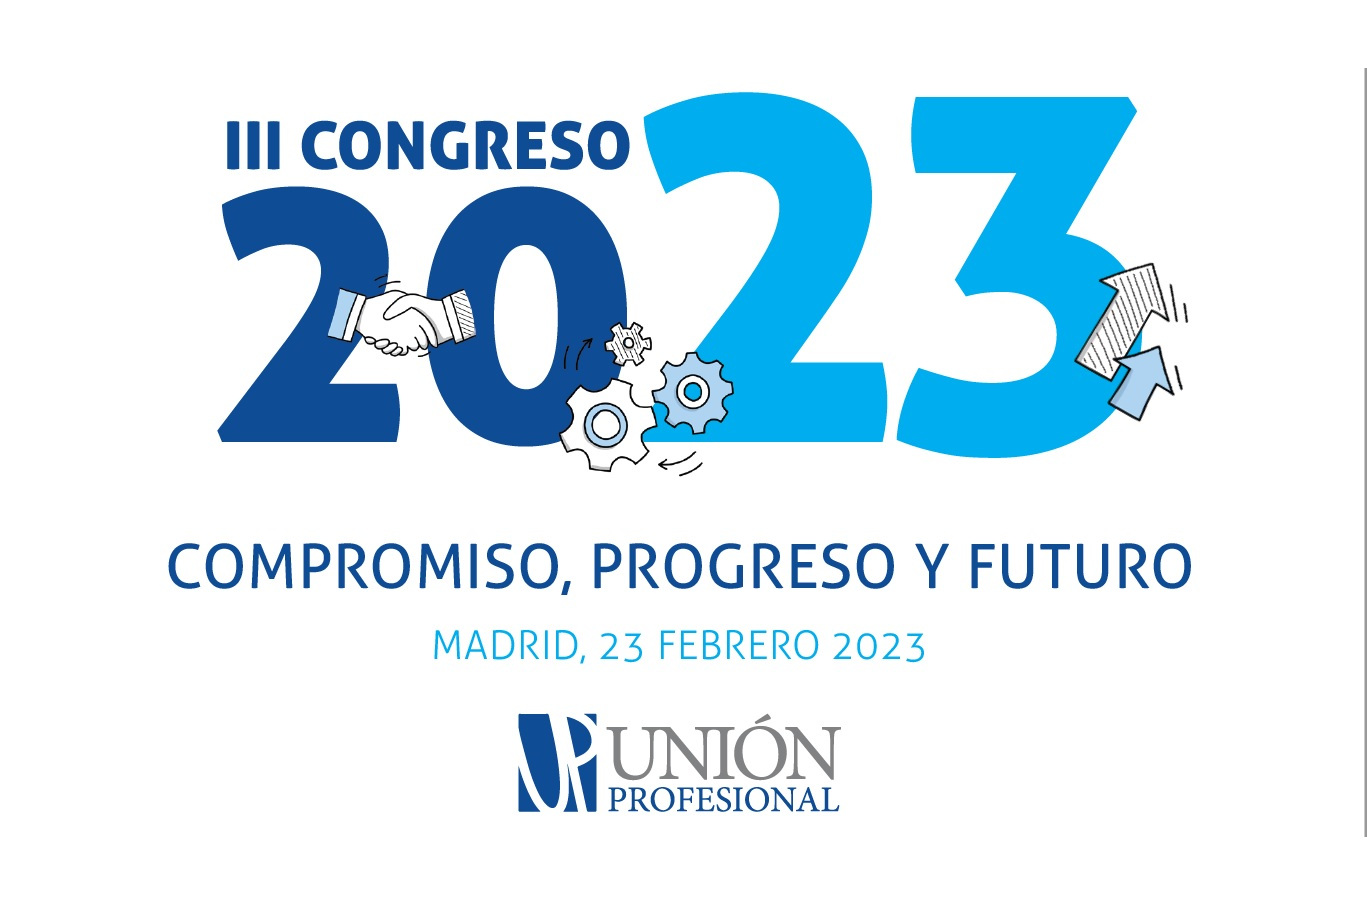 III Congreso Nacional de Profesiones: Compromiso, Progreso y Futuro